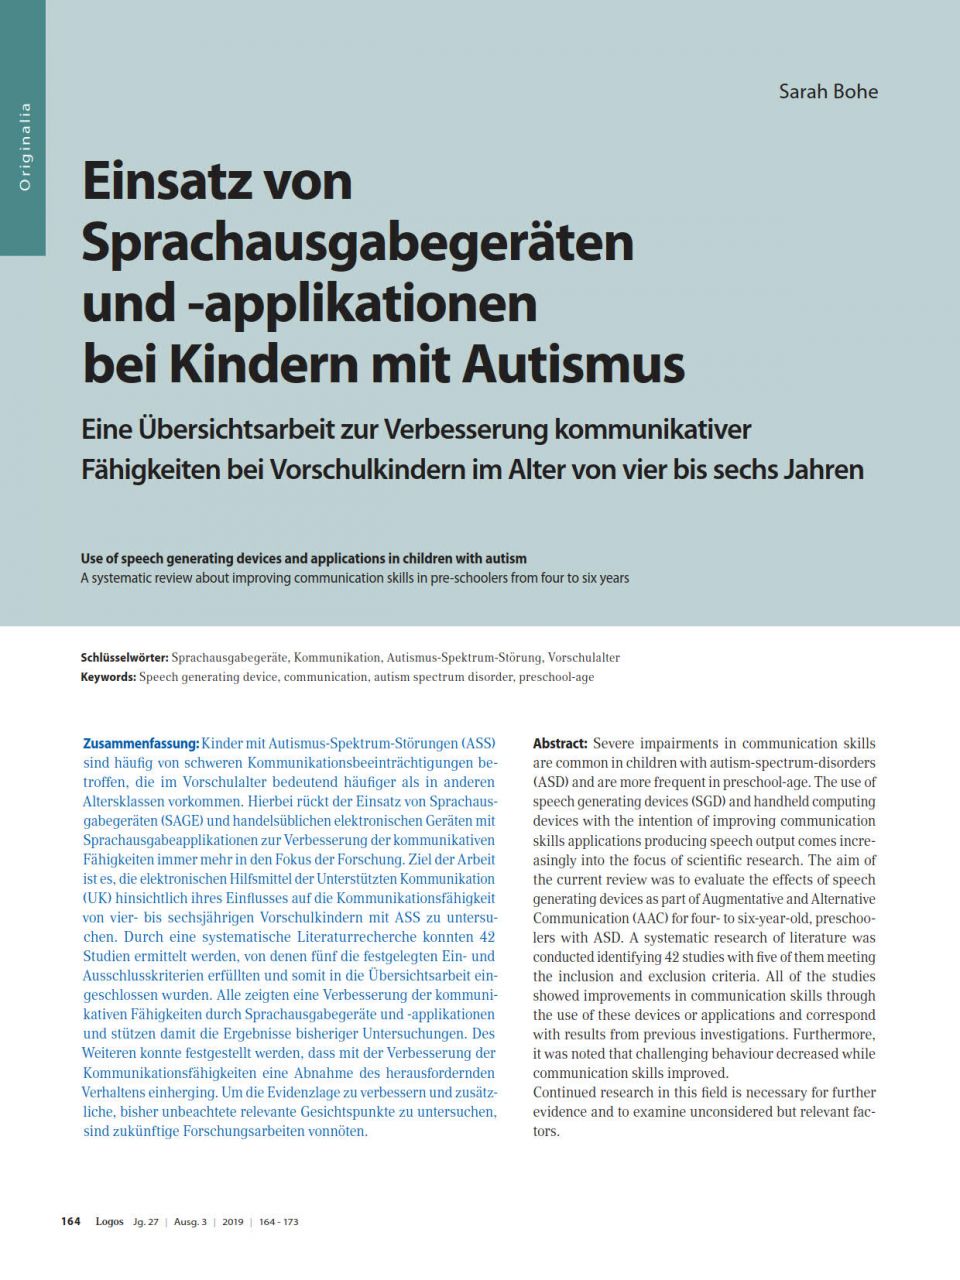 Einsatz von Sprachausgabegeräten und -applikationen bei Kindern mit Autismus